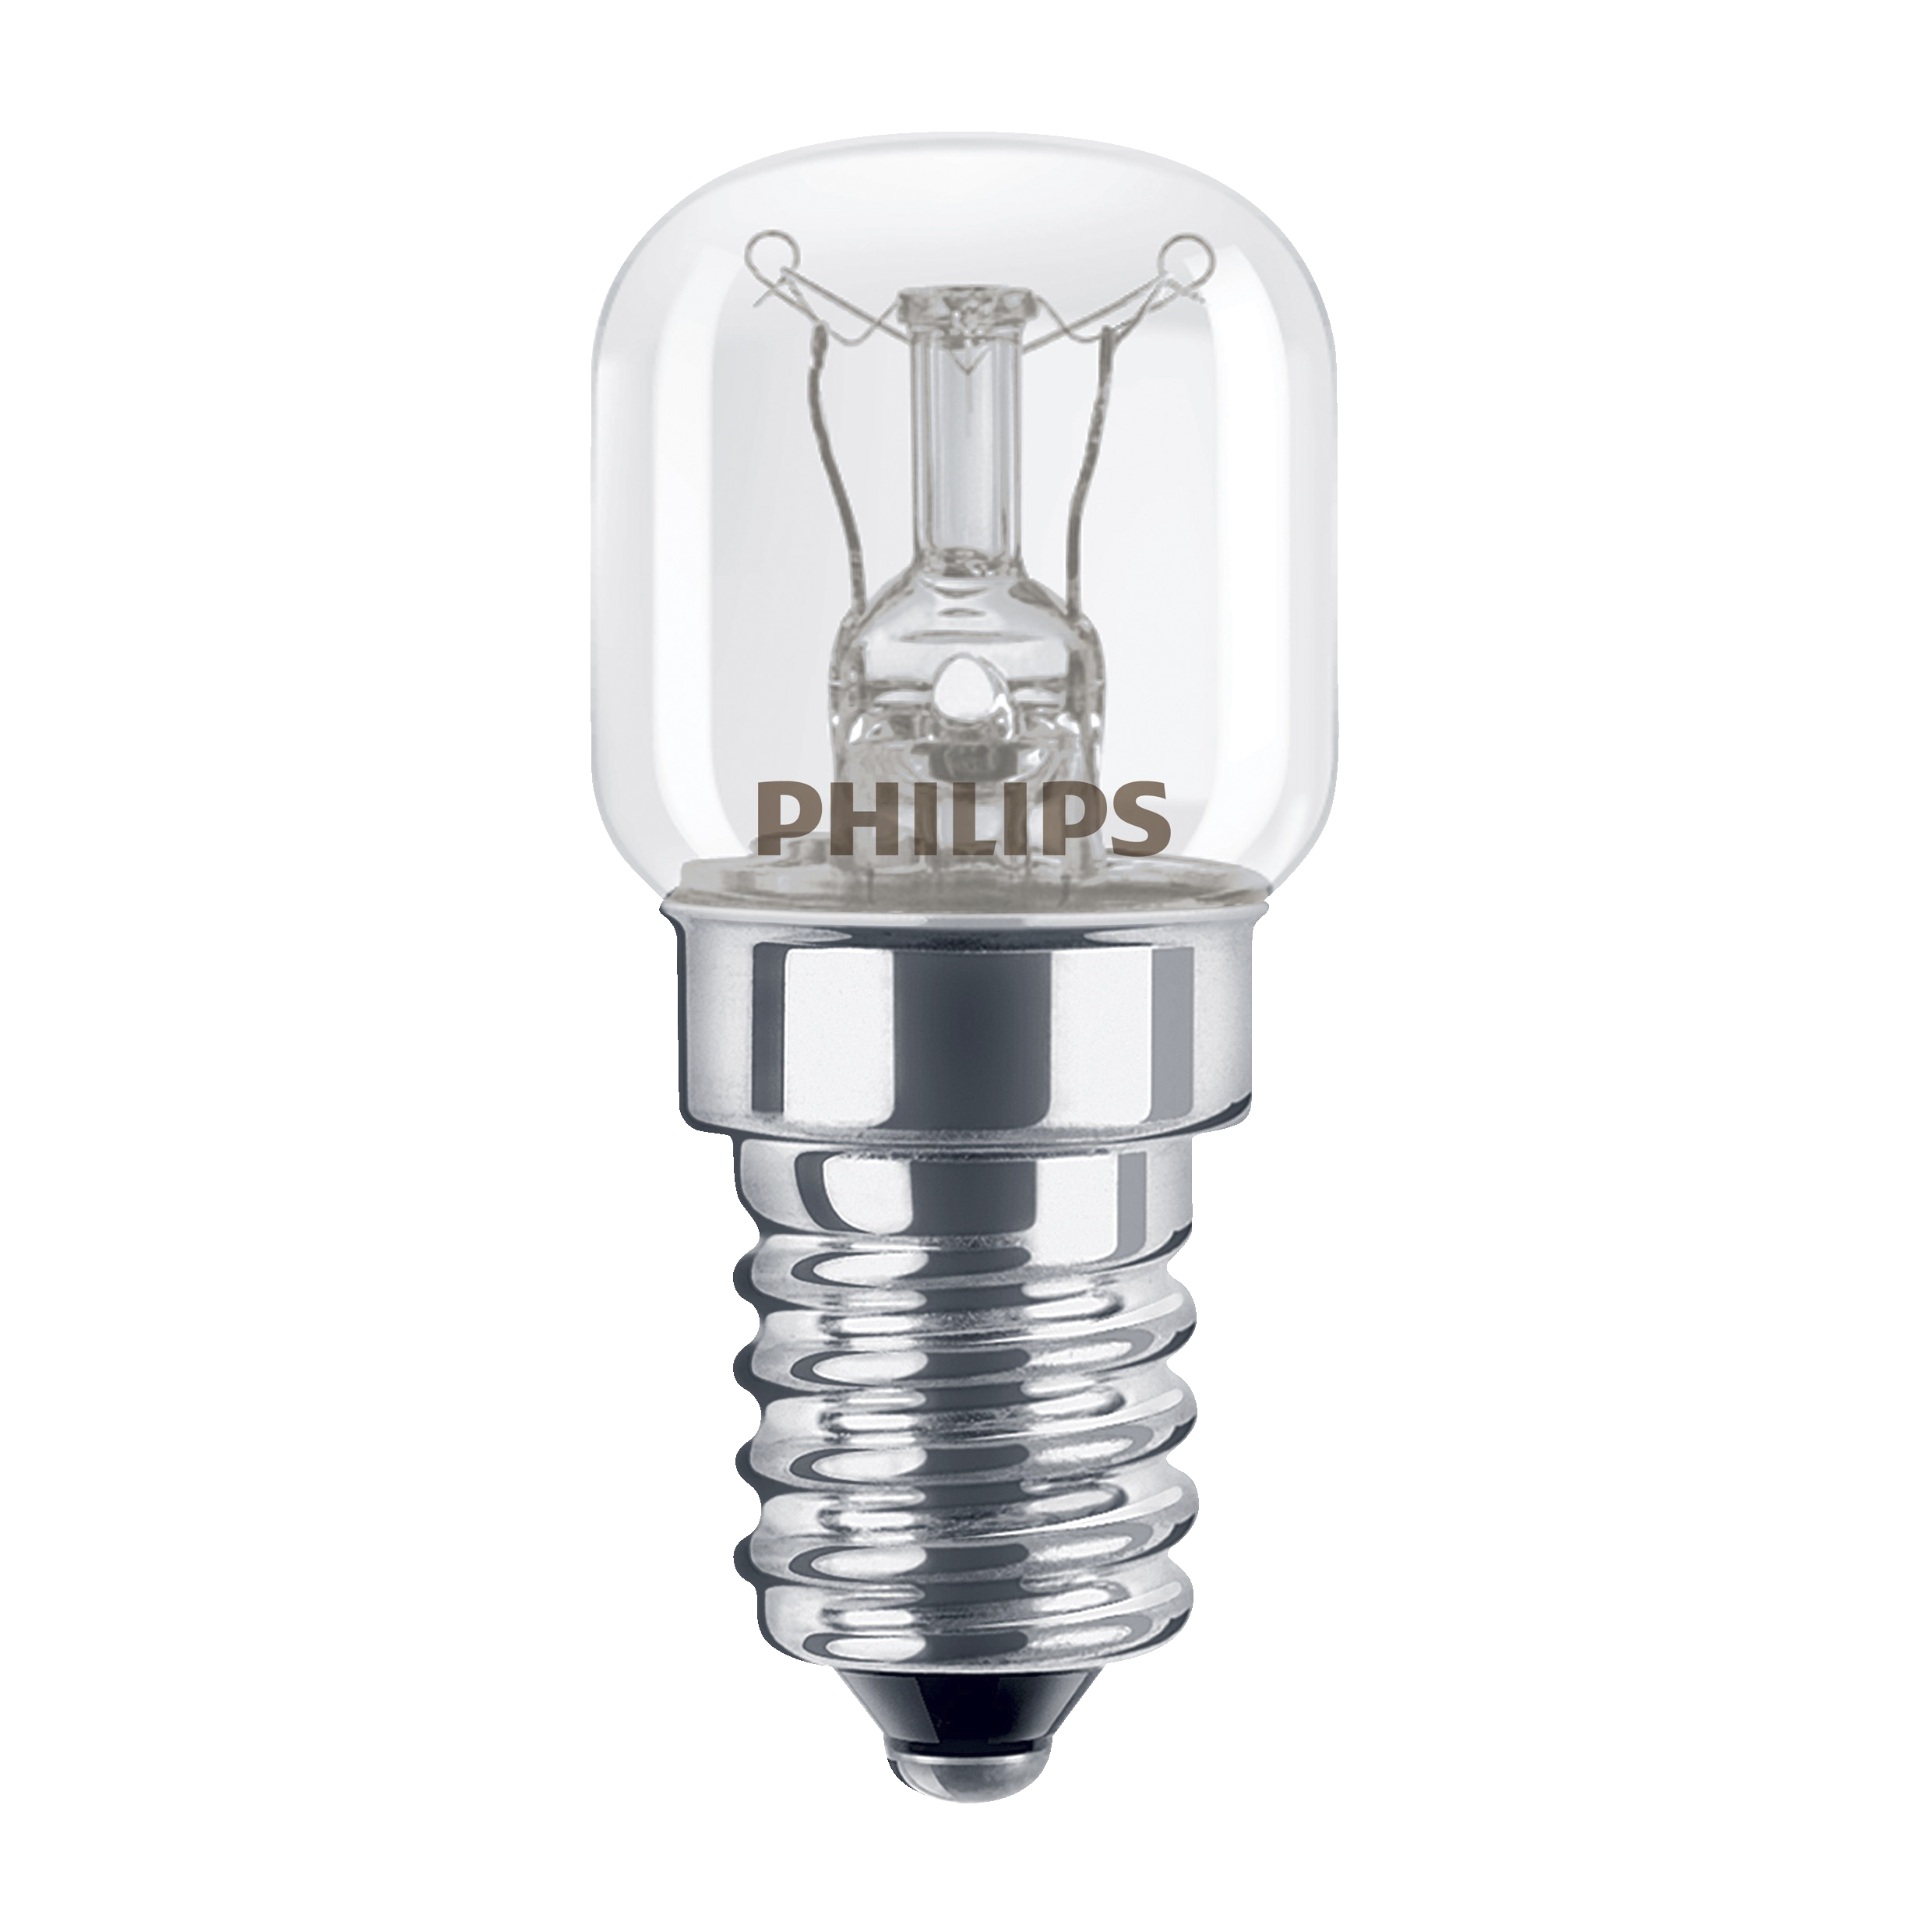 Philips Speciality Incandescent ovnpære - Belysning - Elgiganten